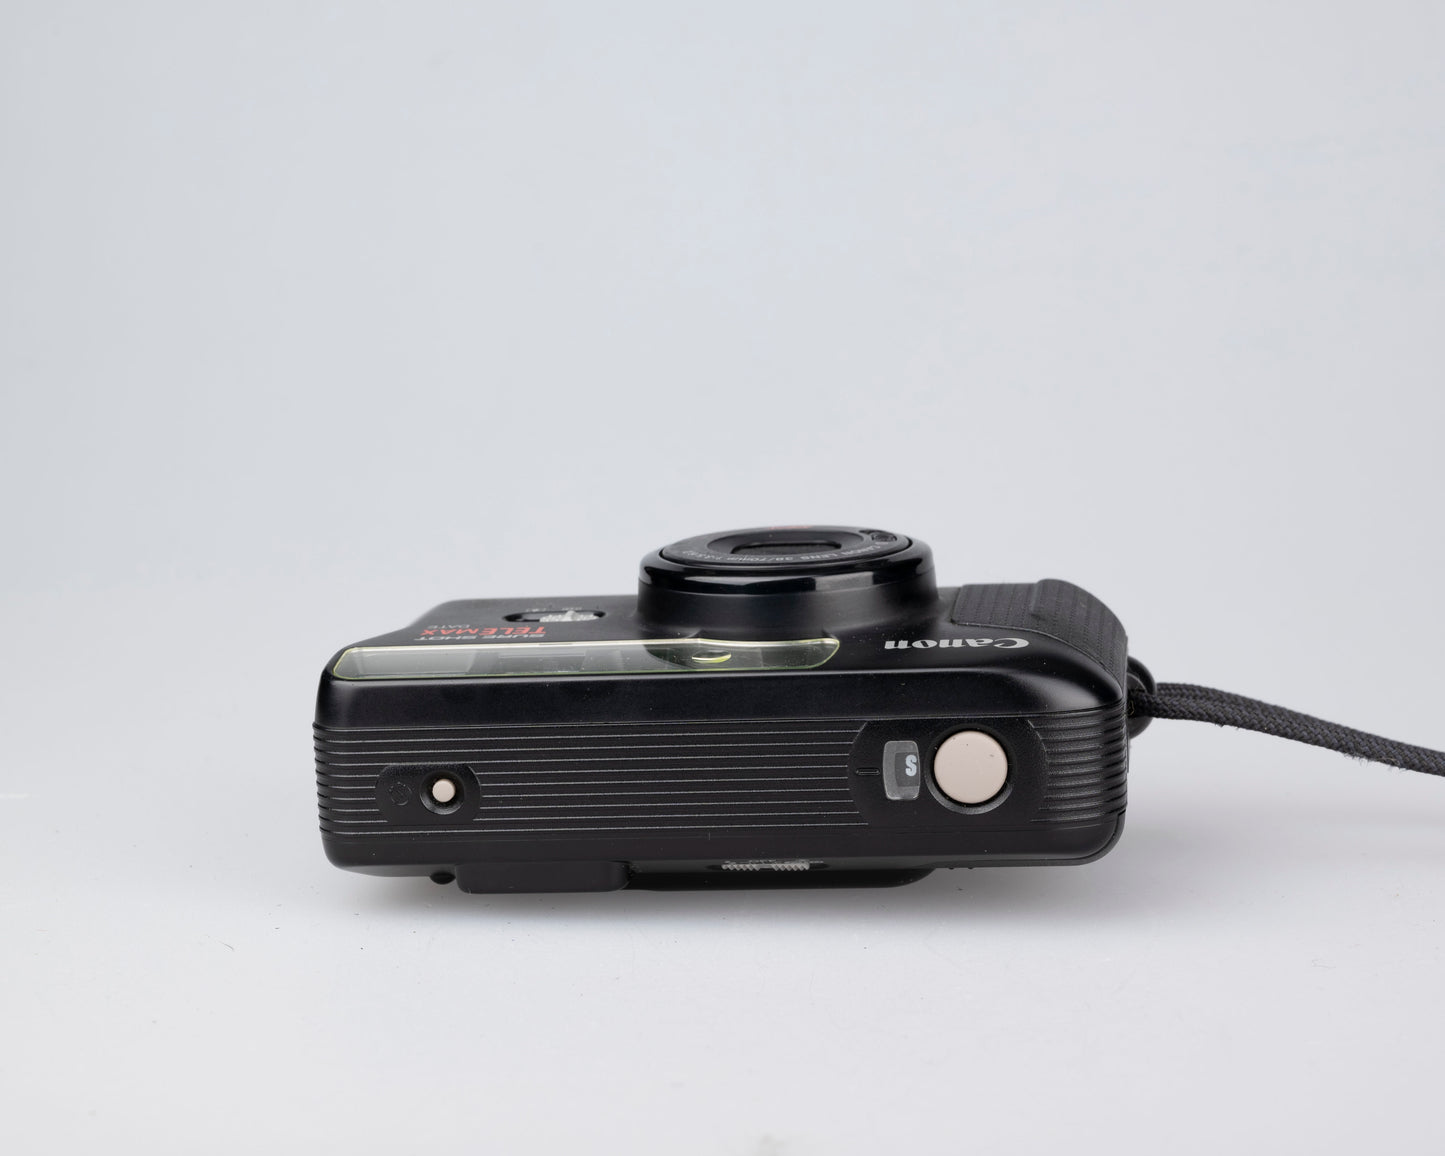 Canon Sure Shot Tele Max 35mm film camera w/ case (serial 5550441)